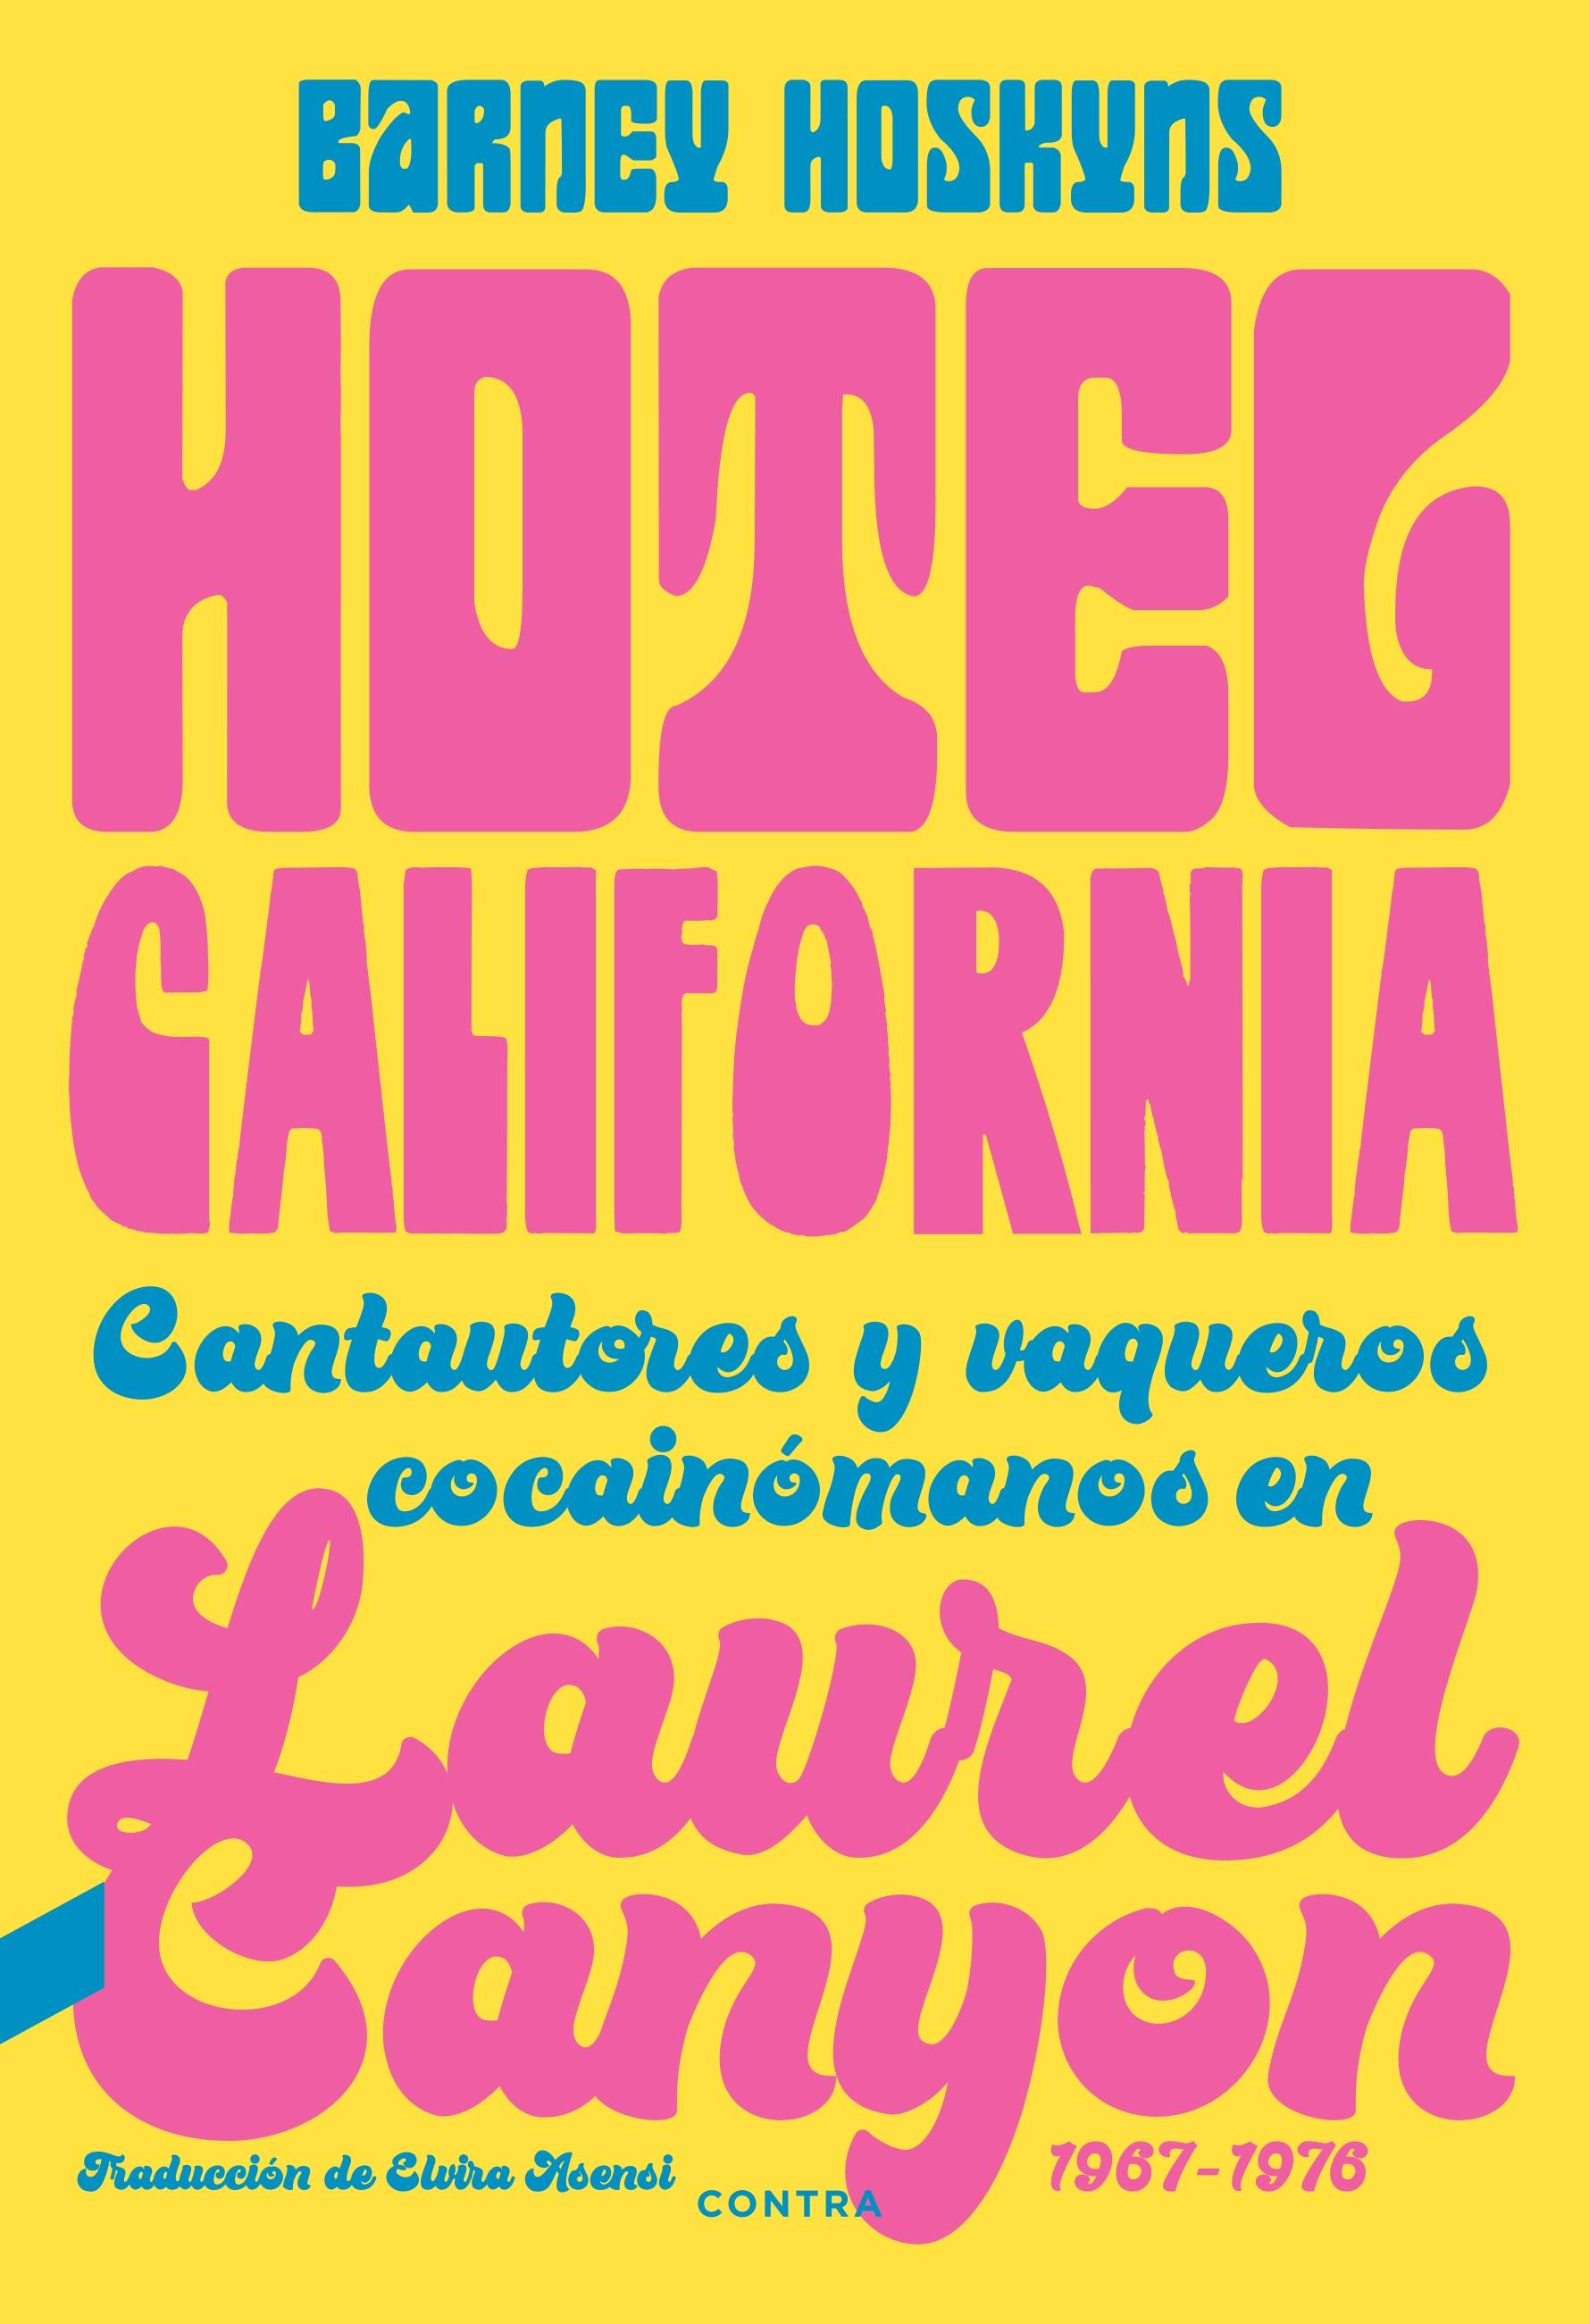 Hotel California "Cantautores y vaqueros cocainómanos en Laurel Canyon 1967-1976"